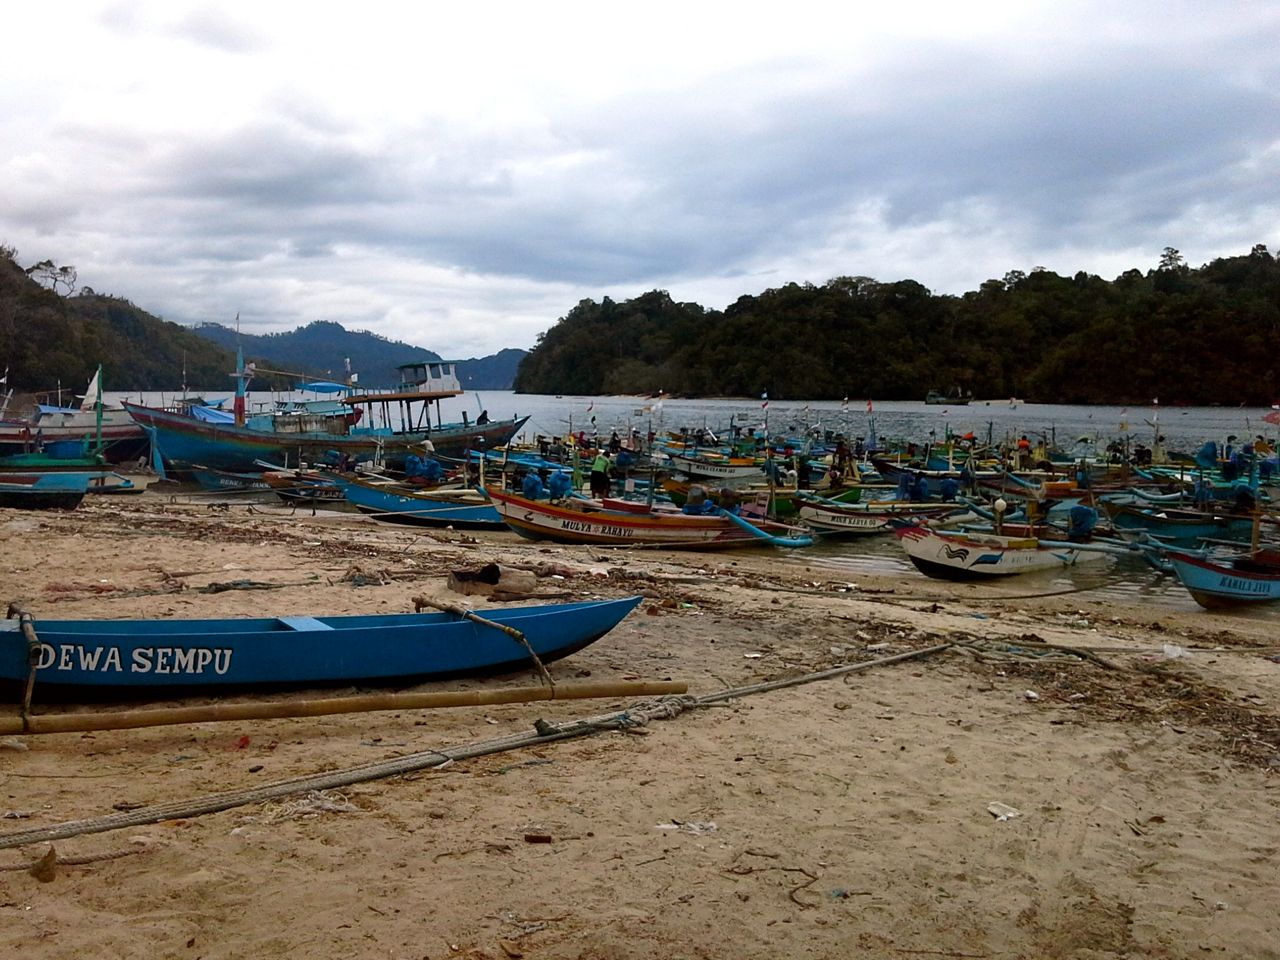 Deretan perahu tradisional yang ada di Sendang Biru. Sendang Biru adalah salah satu sentra nelayan penting di Jawa Timur. Foto: Petrus Riski